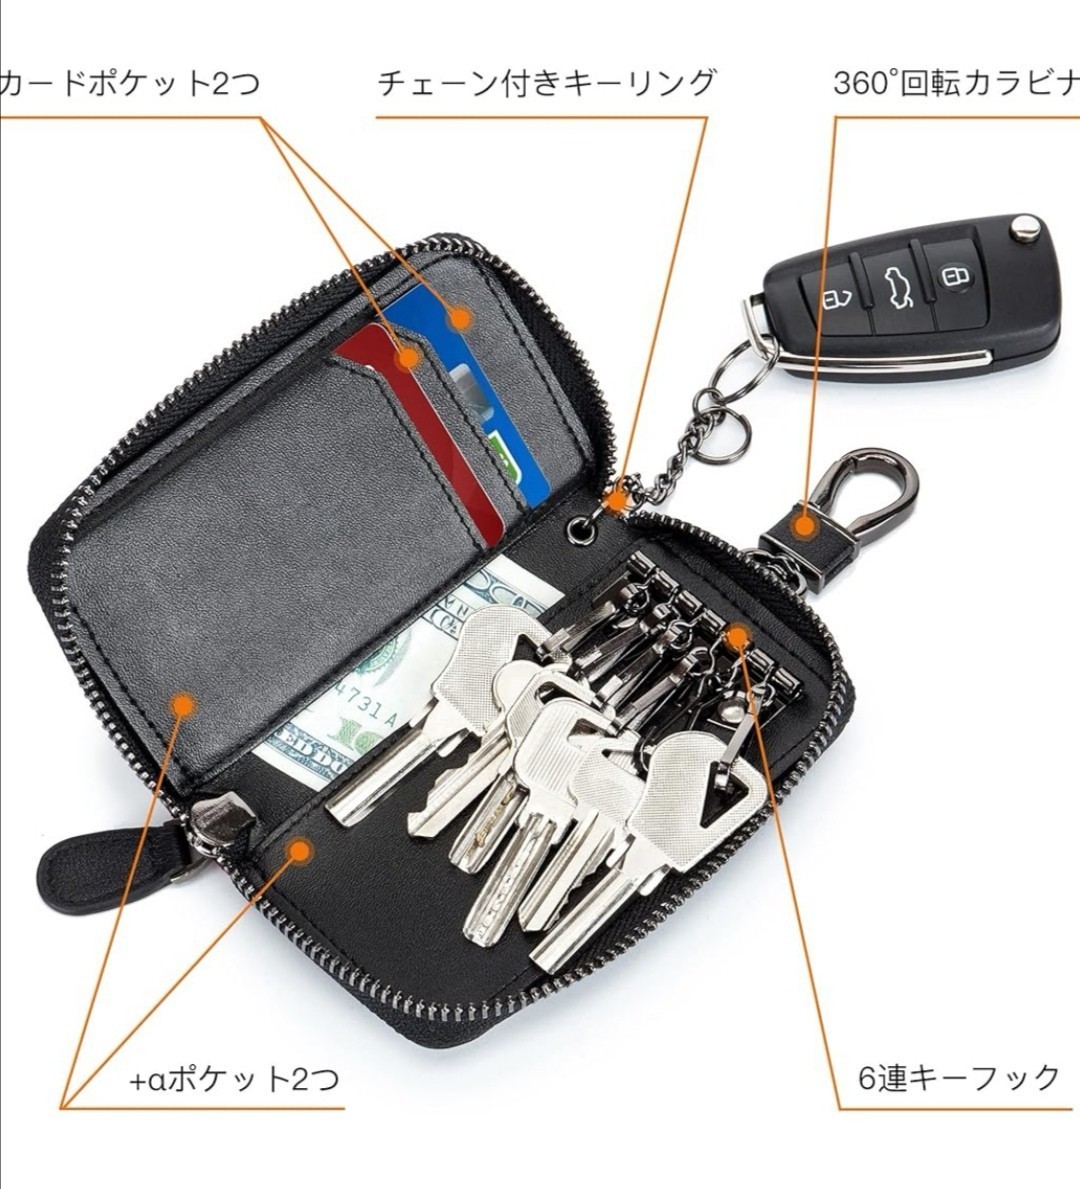 キーケース メンズ 本革 2つ外側ポケット カードキーケース スマートキーケース